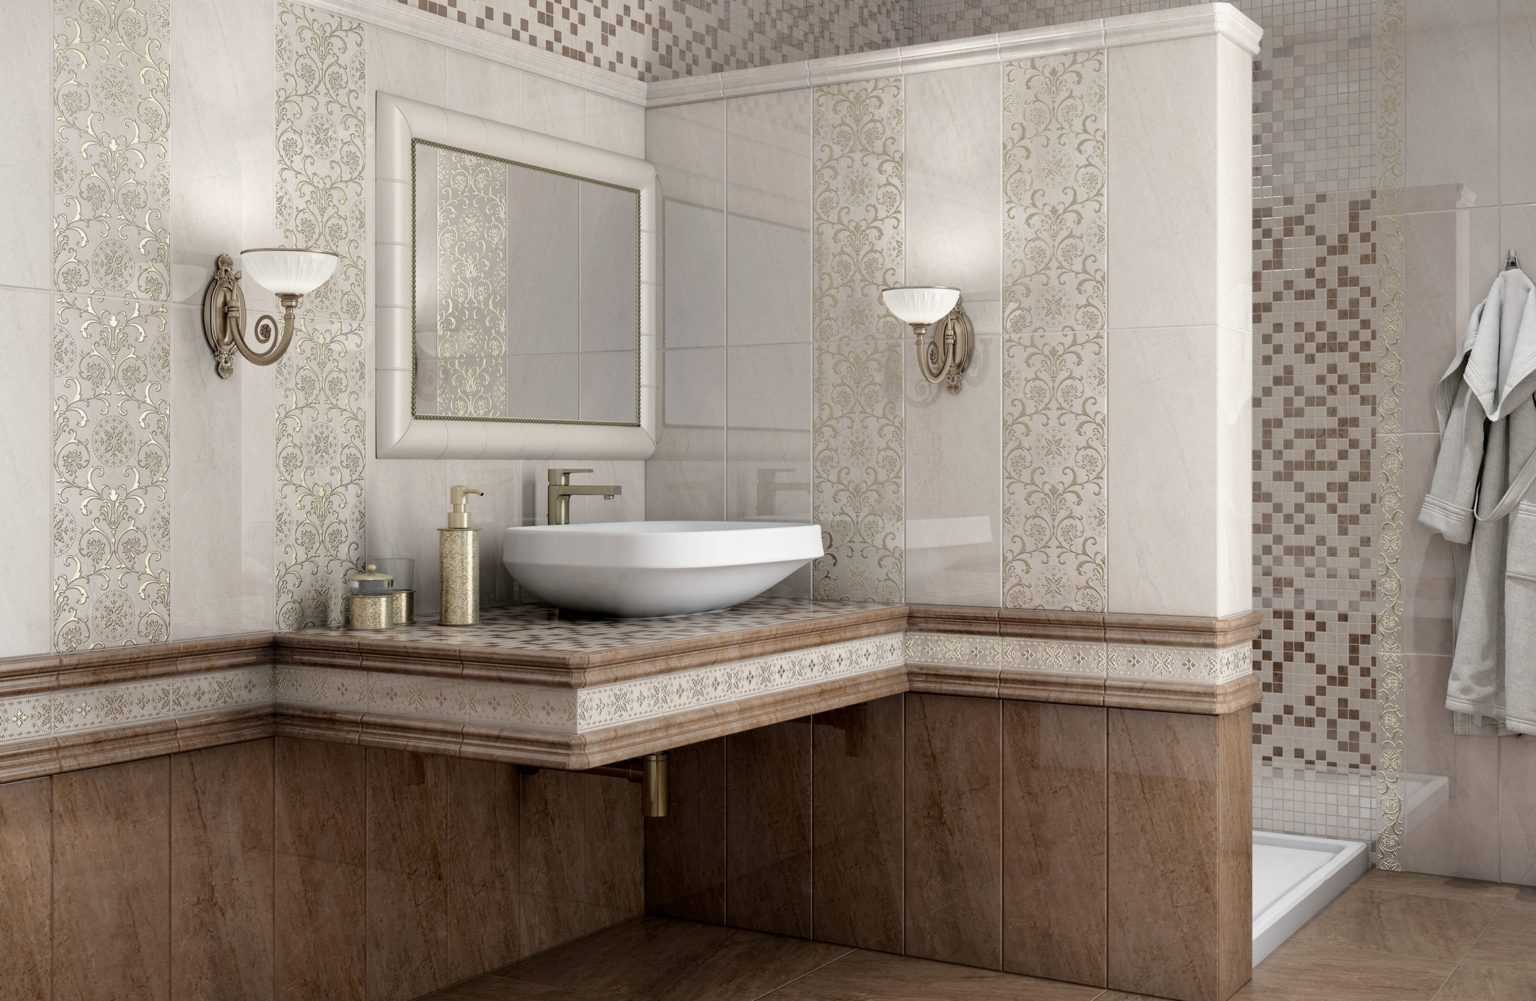 Многие россияне делают ремонт санитарного узла и ванной с использованием кафельной плитки."